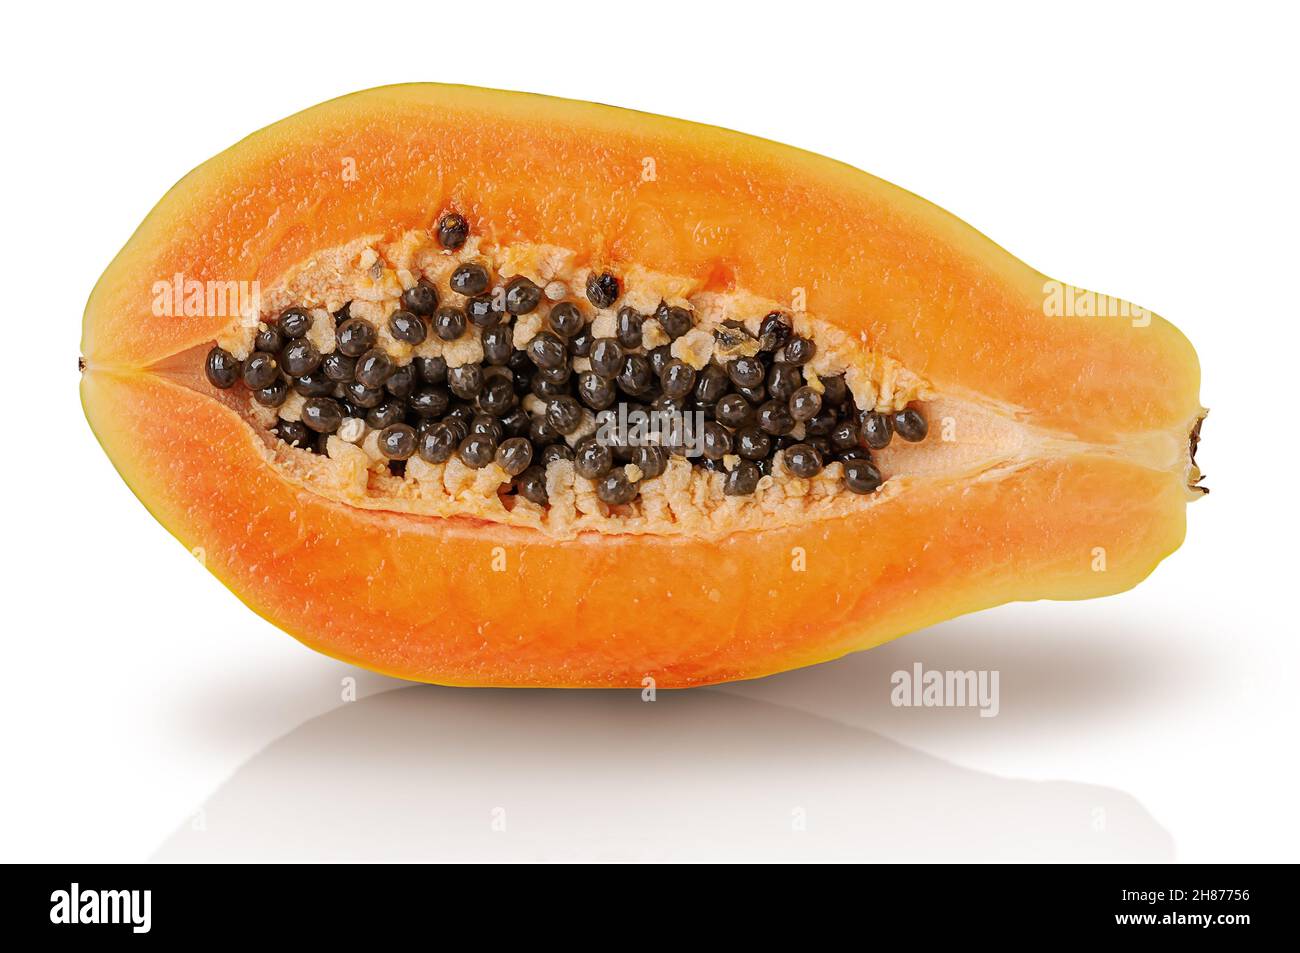 Single half ripe papaya isolated on white background Stock Photo